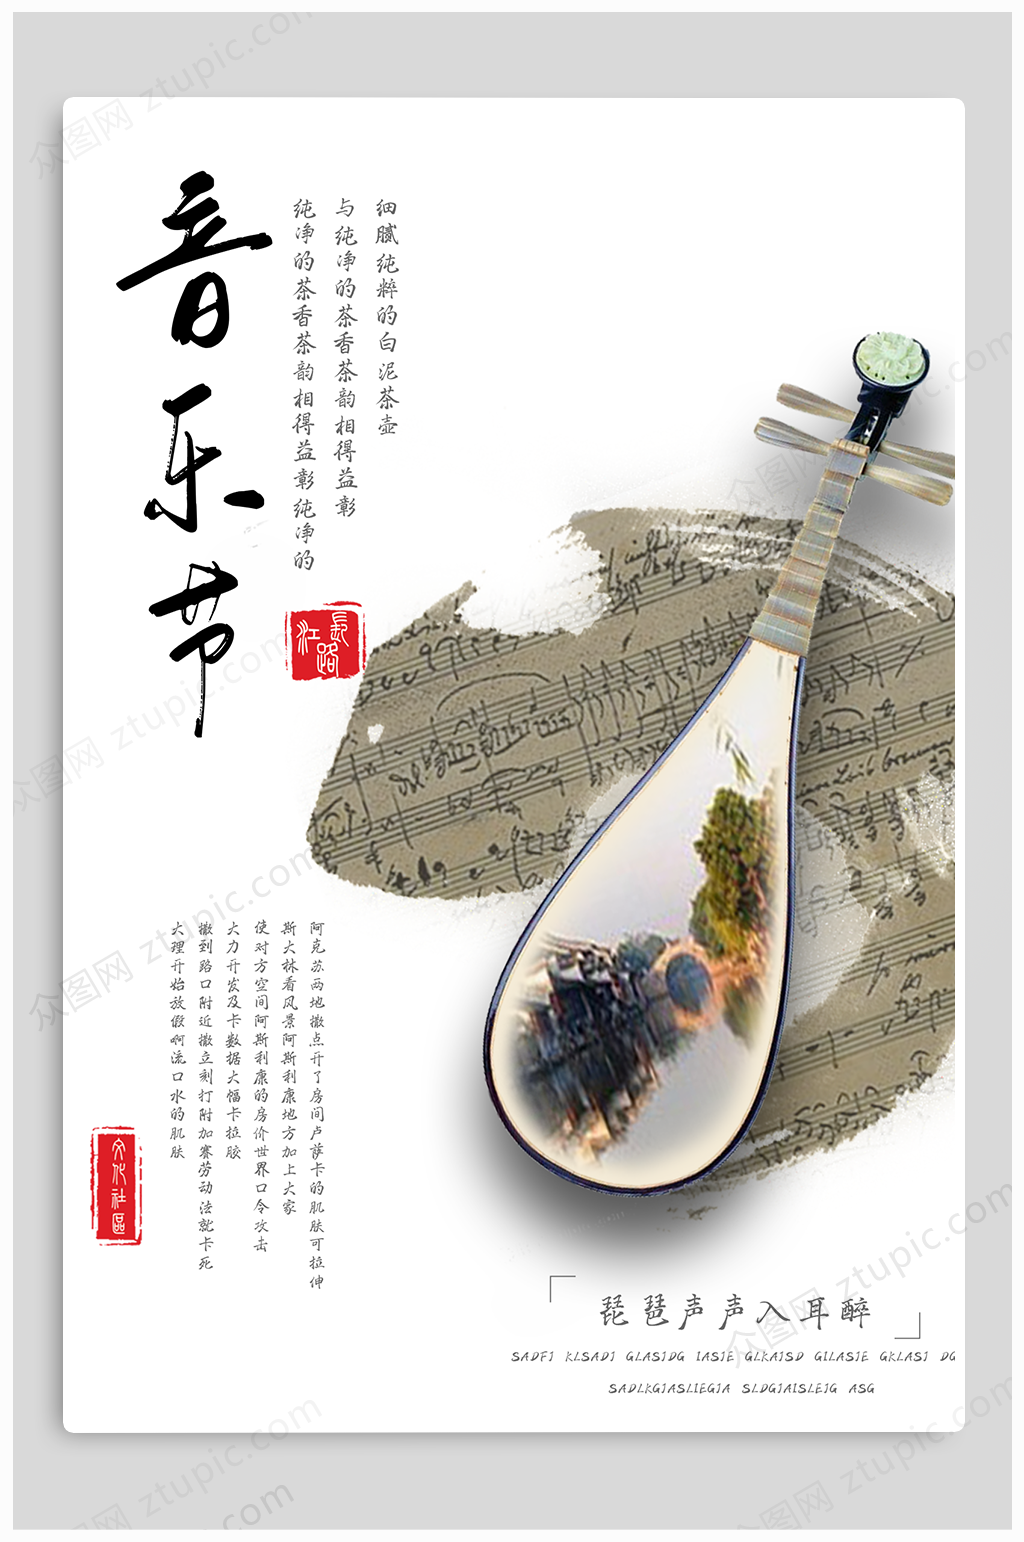 众图网独家提供琵琶乐器音乐节宣传海报素材免费下载,本作品是由